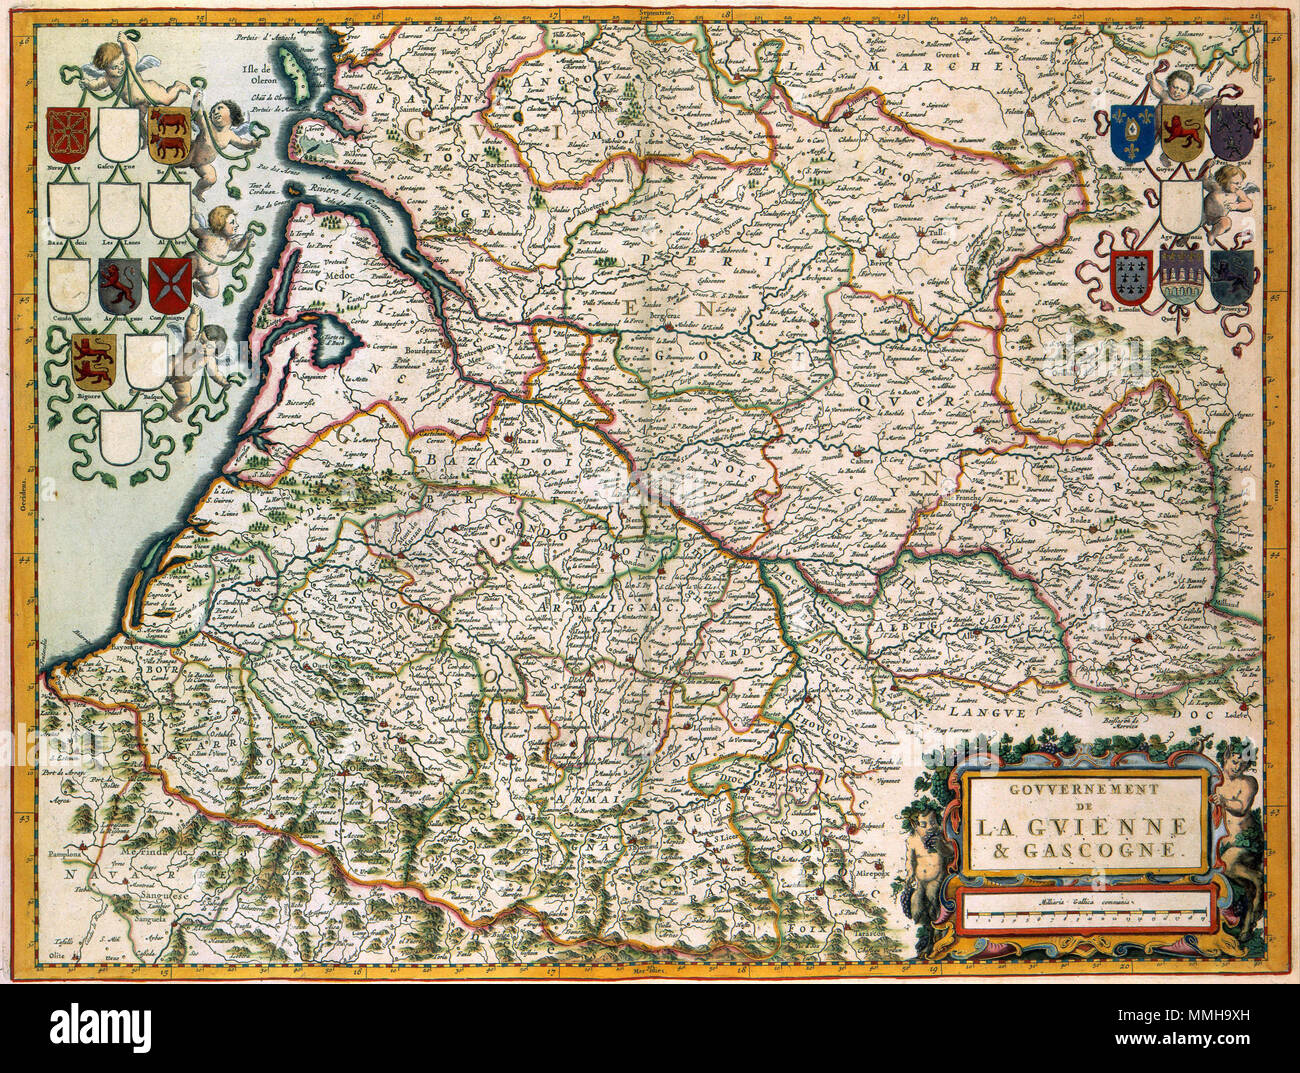 . Nederlands : Deze kaart van Zuid Frankrijk-ouest, die ook het gebied van Bordeaux en 1662 werd omvat opgenomen Atlas Maior dans van Joan Blaeu (1598-1673). De image est gebaseerd op een kaart rencontré dezelfde titel van de Franse kartograaf Nicolas Sanson (1600-1667) UIT 1650. Anglais : cette carte du sud-ouest de la France, y compris la région de Bordeaux a été inscrite en 1662 dans l'Atlas Maior par Joan Blaeu (1598-1673). L'image de la carte était basée sur une carte avec le même titre par Nicolas Sanson (1600-1667) à partir de 1650. GOVVERNEMENT DE LA GVIENNE & GASCOGNE. 1662. Atlas Van der Hagen-KW1049B12 039-GOVVERNEMENT Banque D'Images